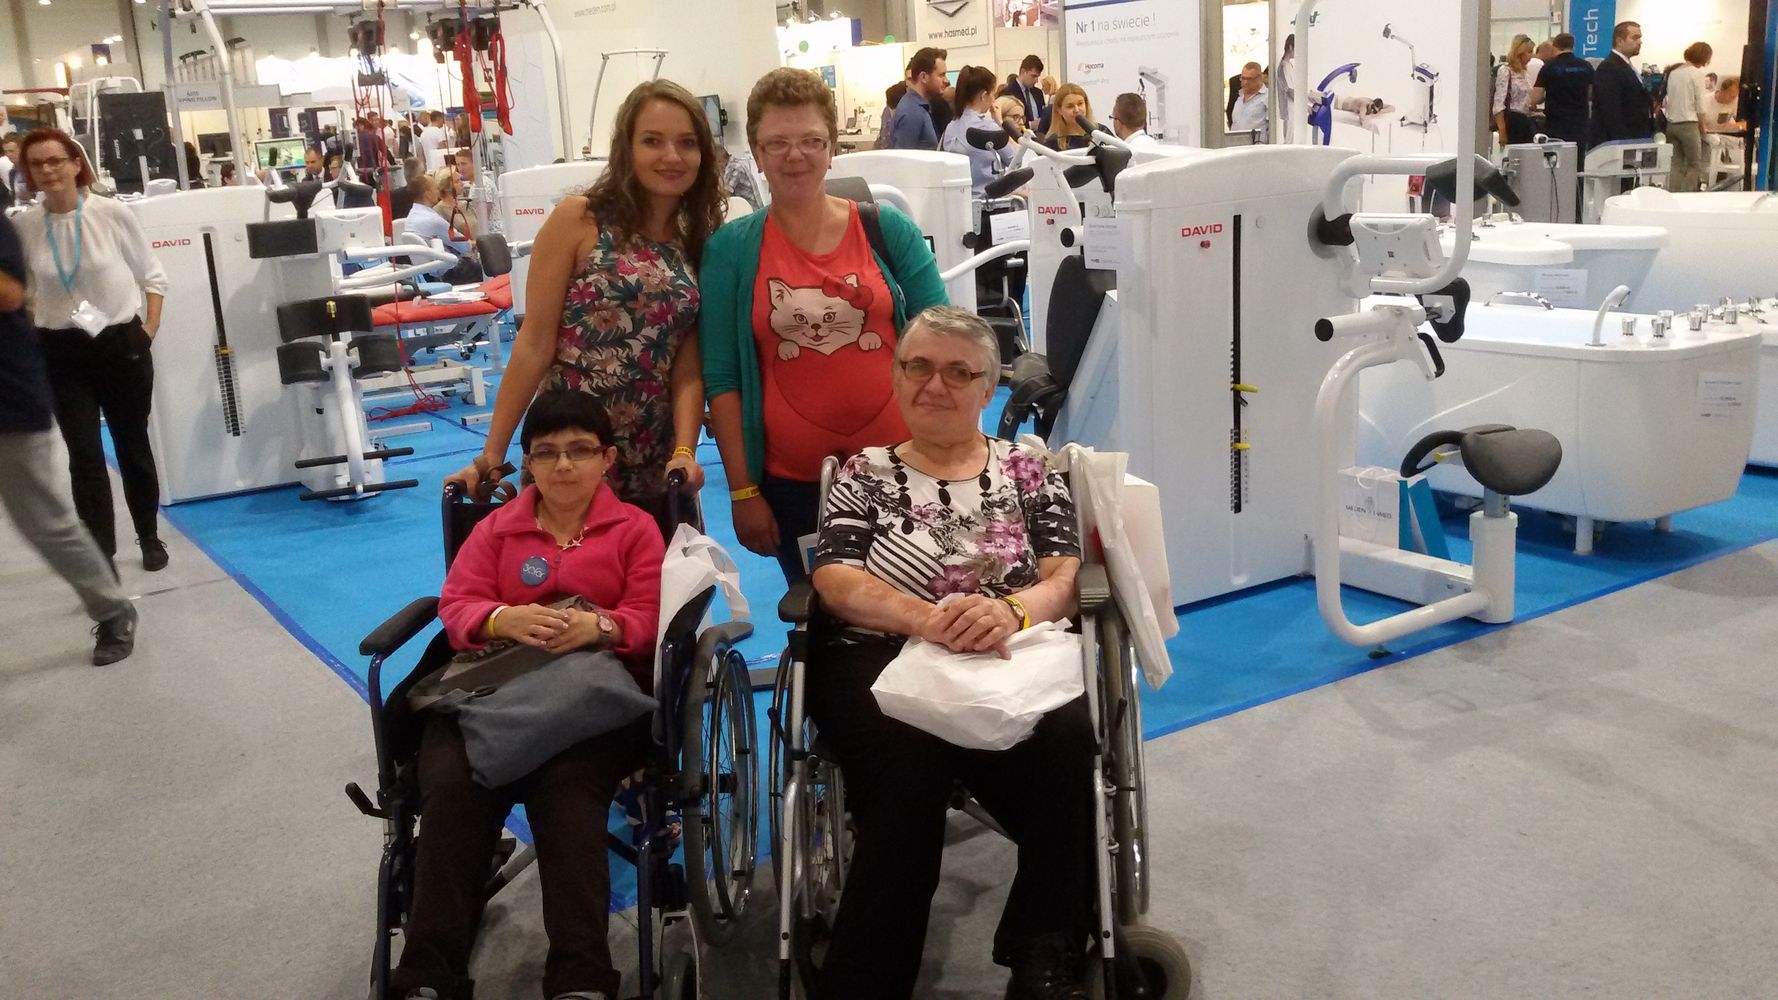 Asystent osoby niepełnosprawnej z 3 podopiecznymi - kobiety, w tym 2 kobietami na wózkach inwalidzkich podczas targów sprzętu rehabilitacyjnego.